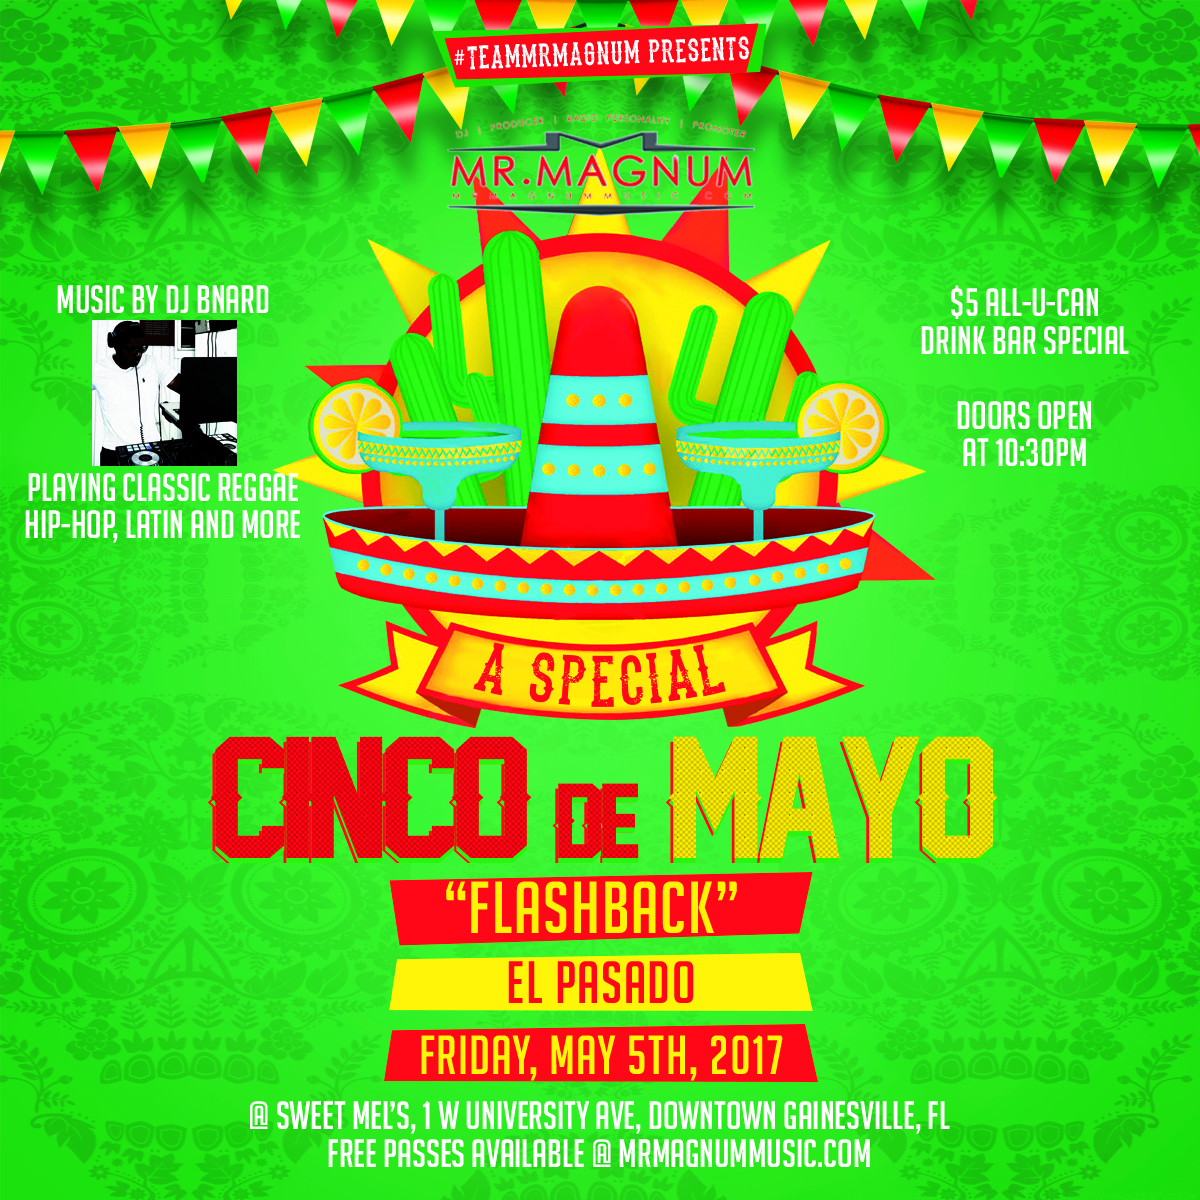 El Pasado - A Cinco De Mayo Flashback Party with #TeamMrMagnum